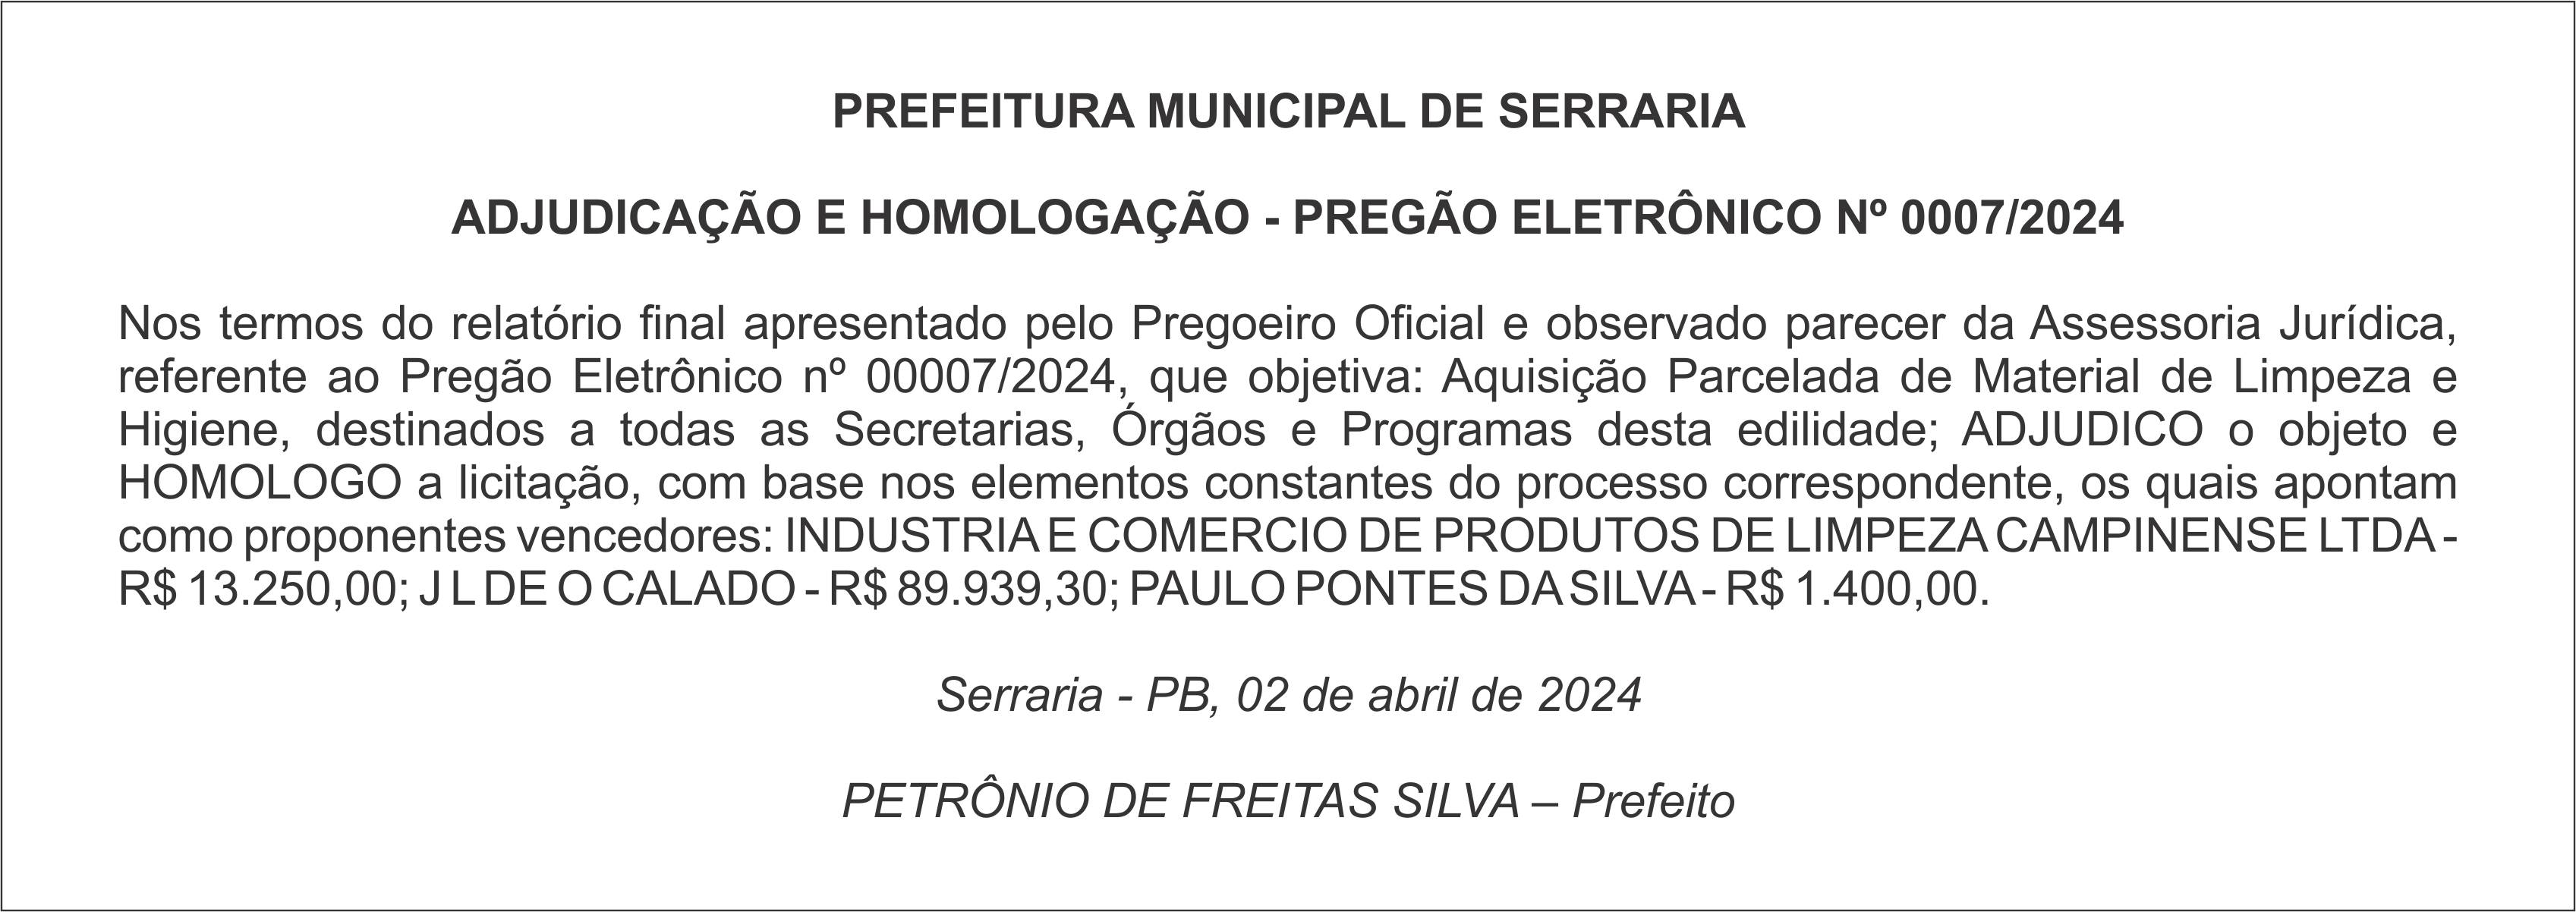 PREFEITURA MUNICIPAL DE SERRARIA – ADJUDICAÇÃO E HOMOLOGAÇÃO – PREGÃO ELETRÔNICO Nº 0007/2024